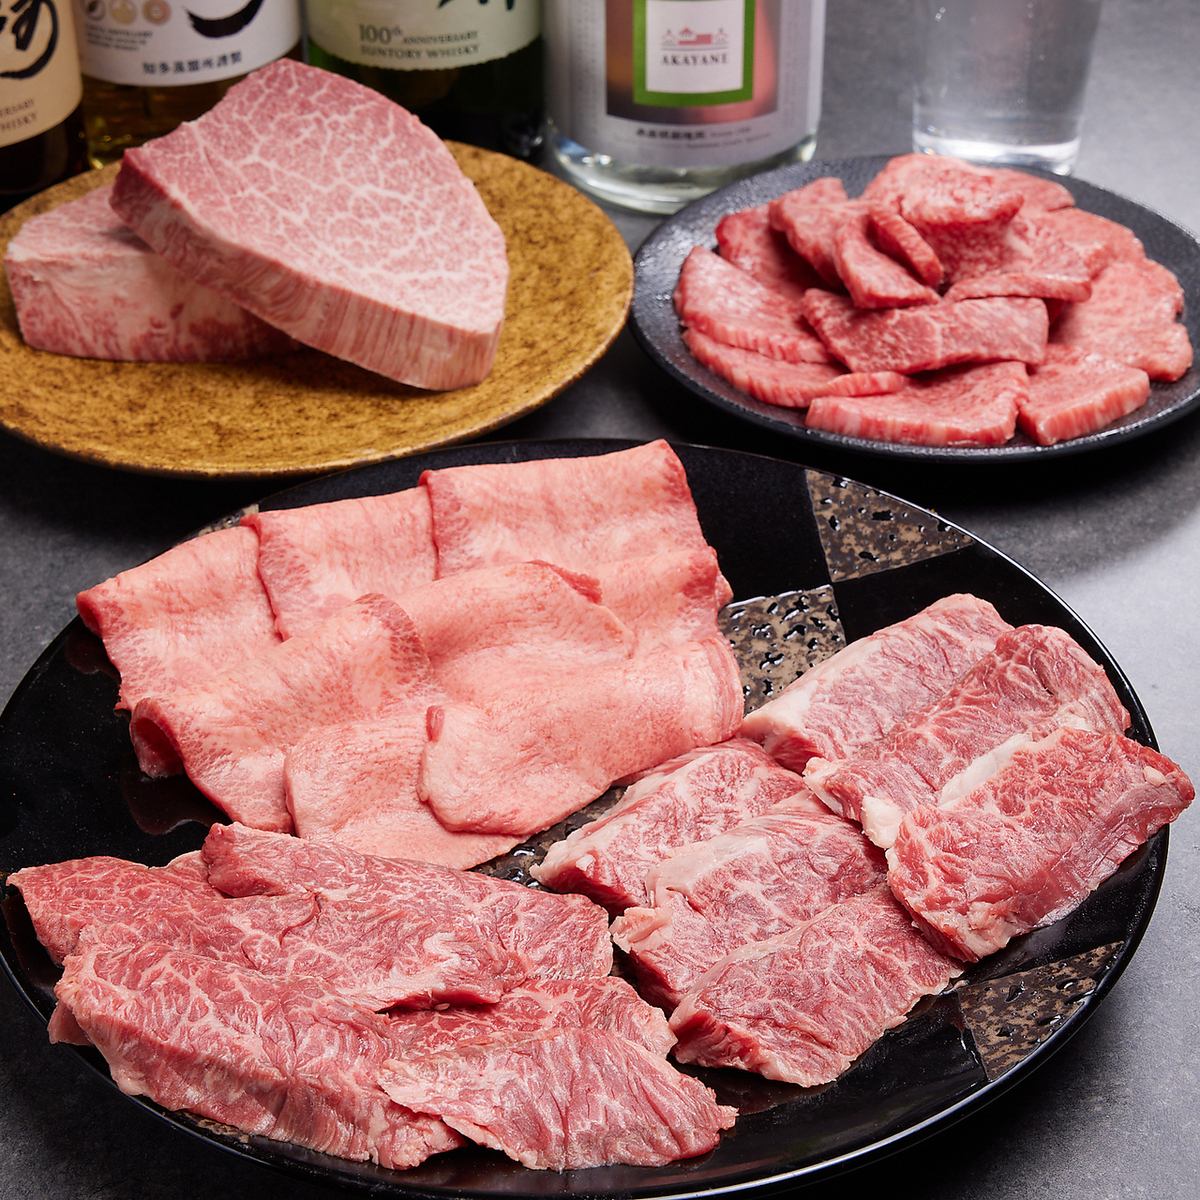 타지마 쇠고기를 중심으로 고품질의 고기를 드세요!